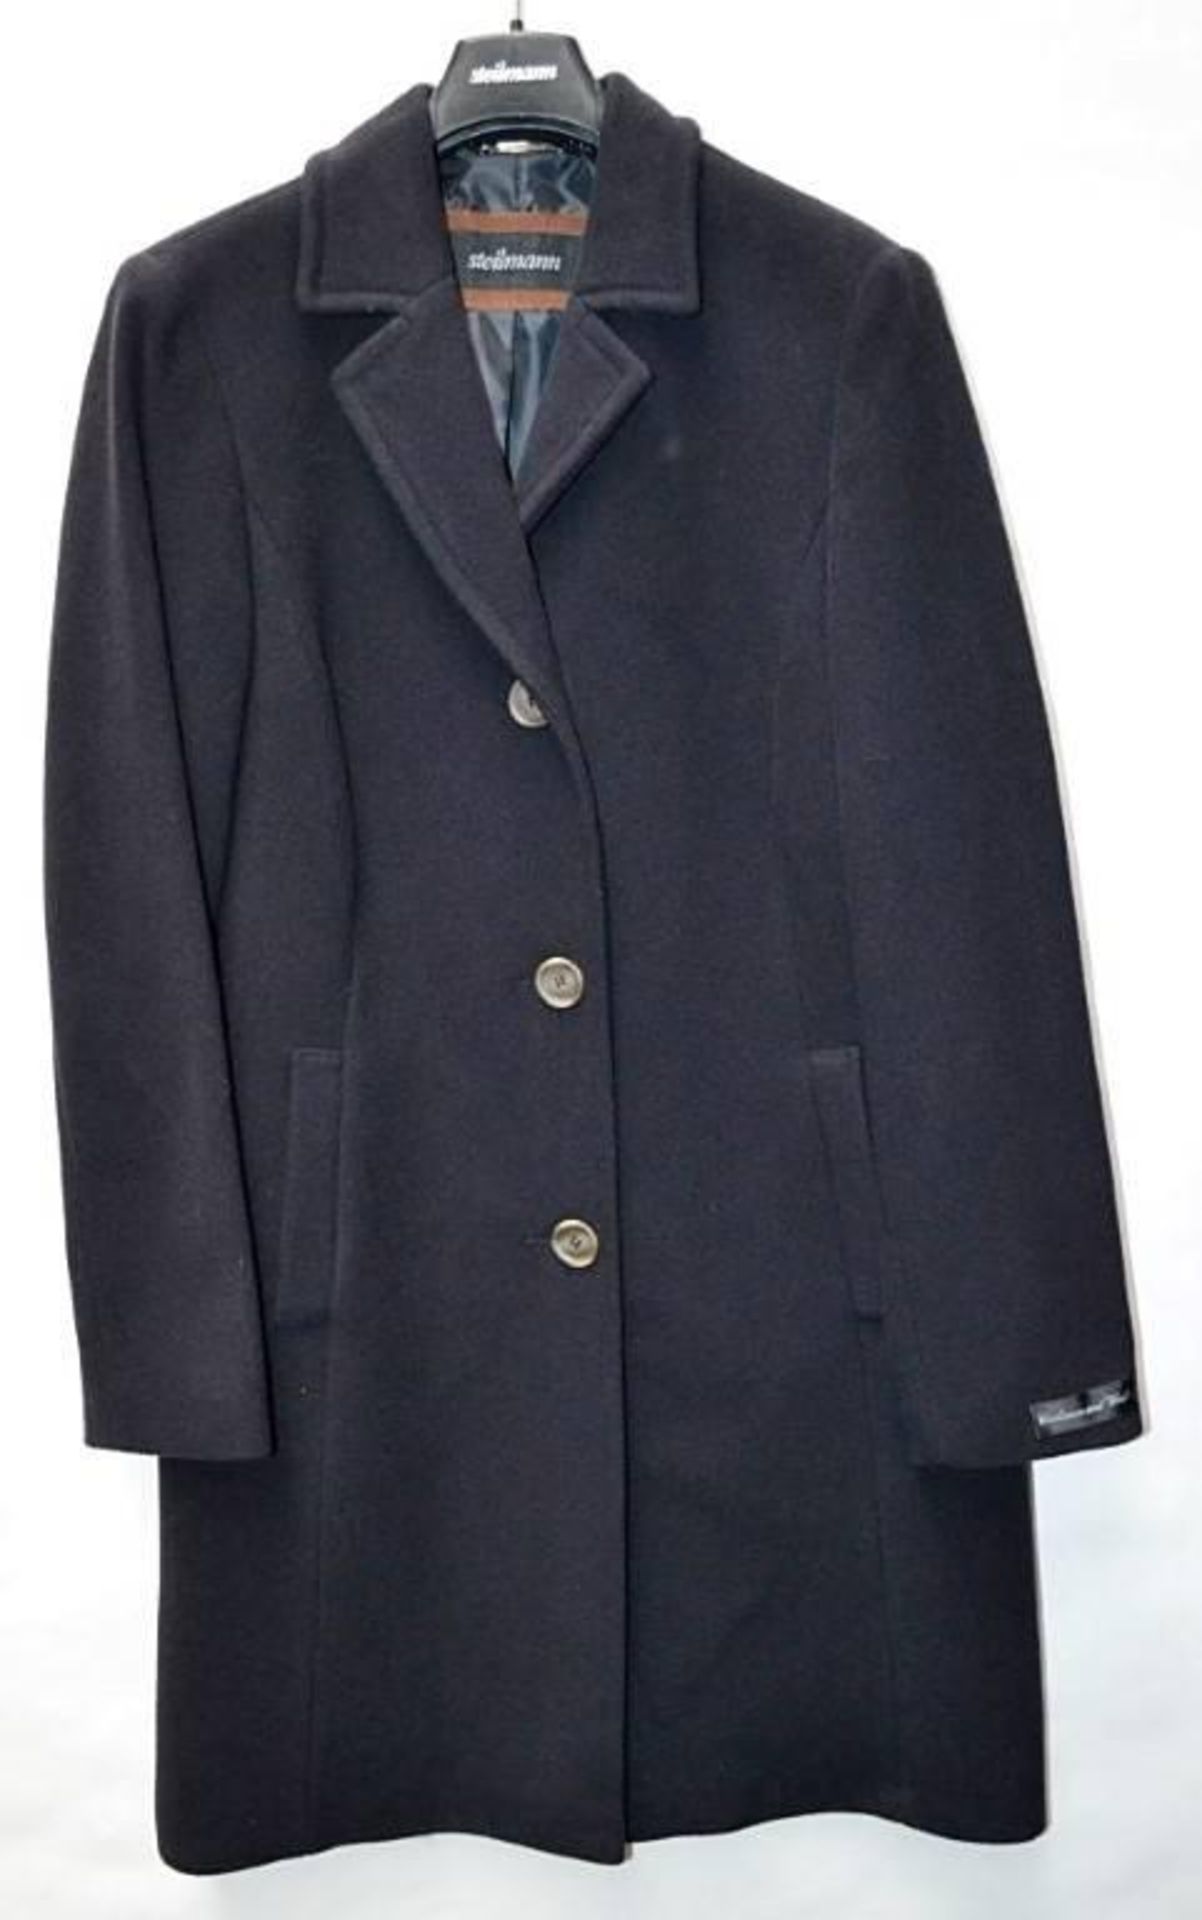 1 x Steilmann Premium 'Wool + Cashmere' Winter Coat - Dark Navy, Very Smart With False Pockets To Fr